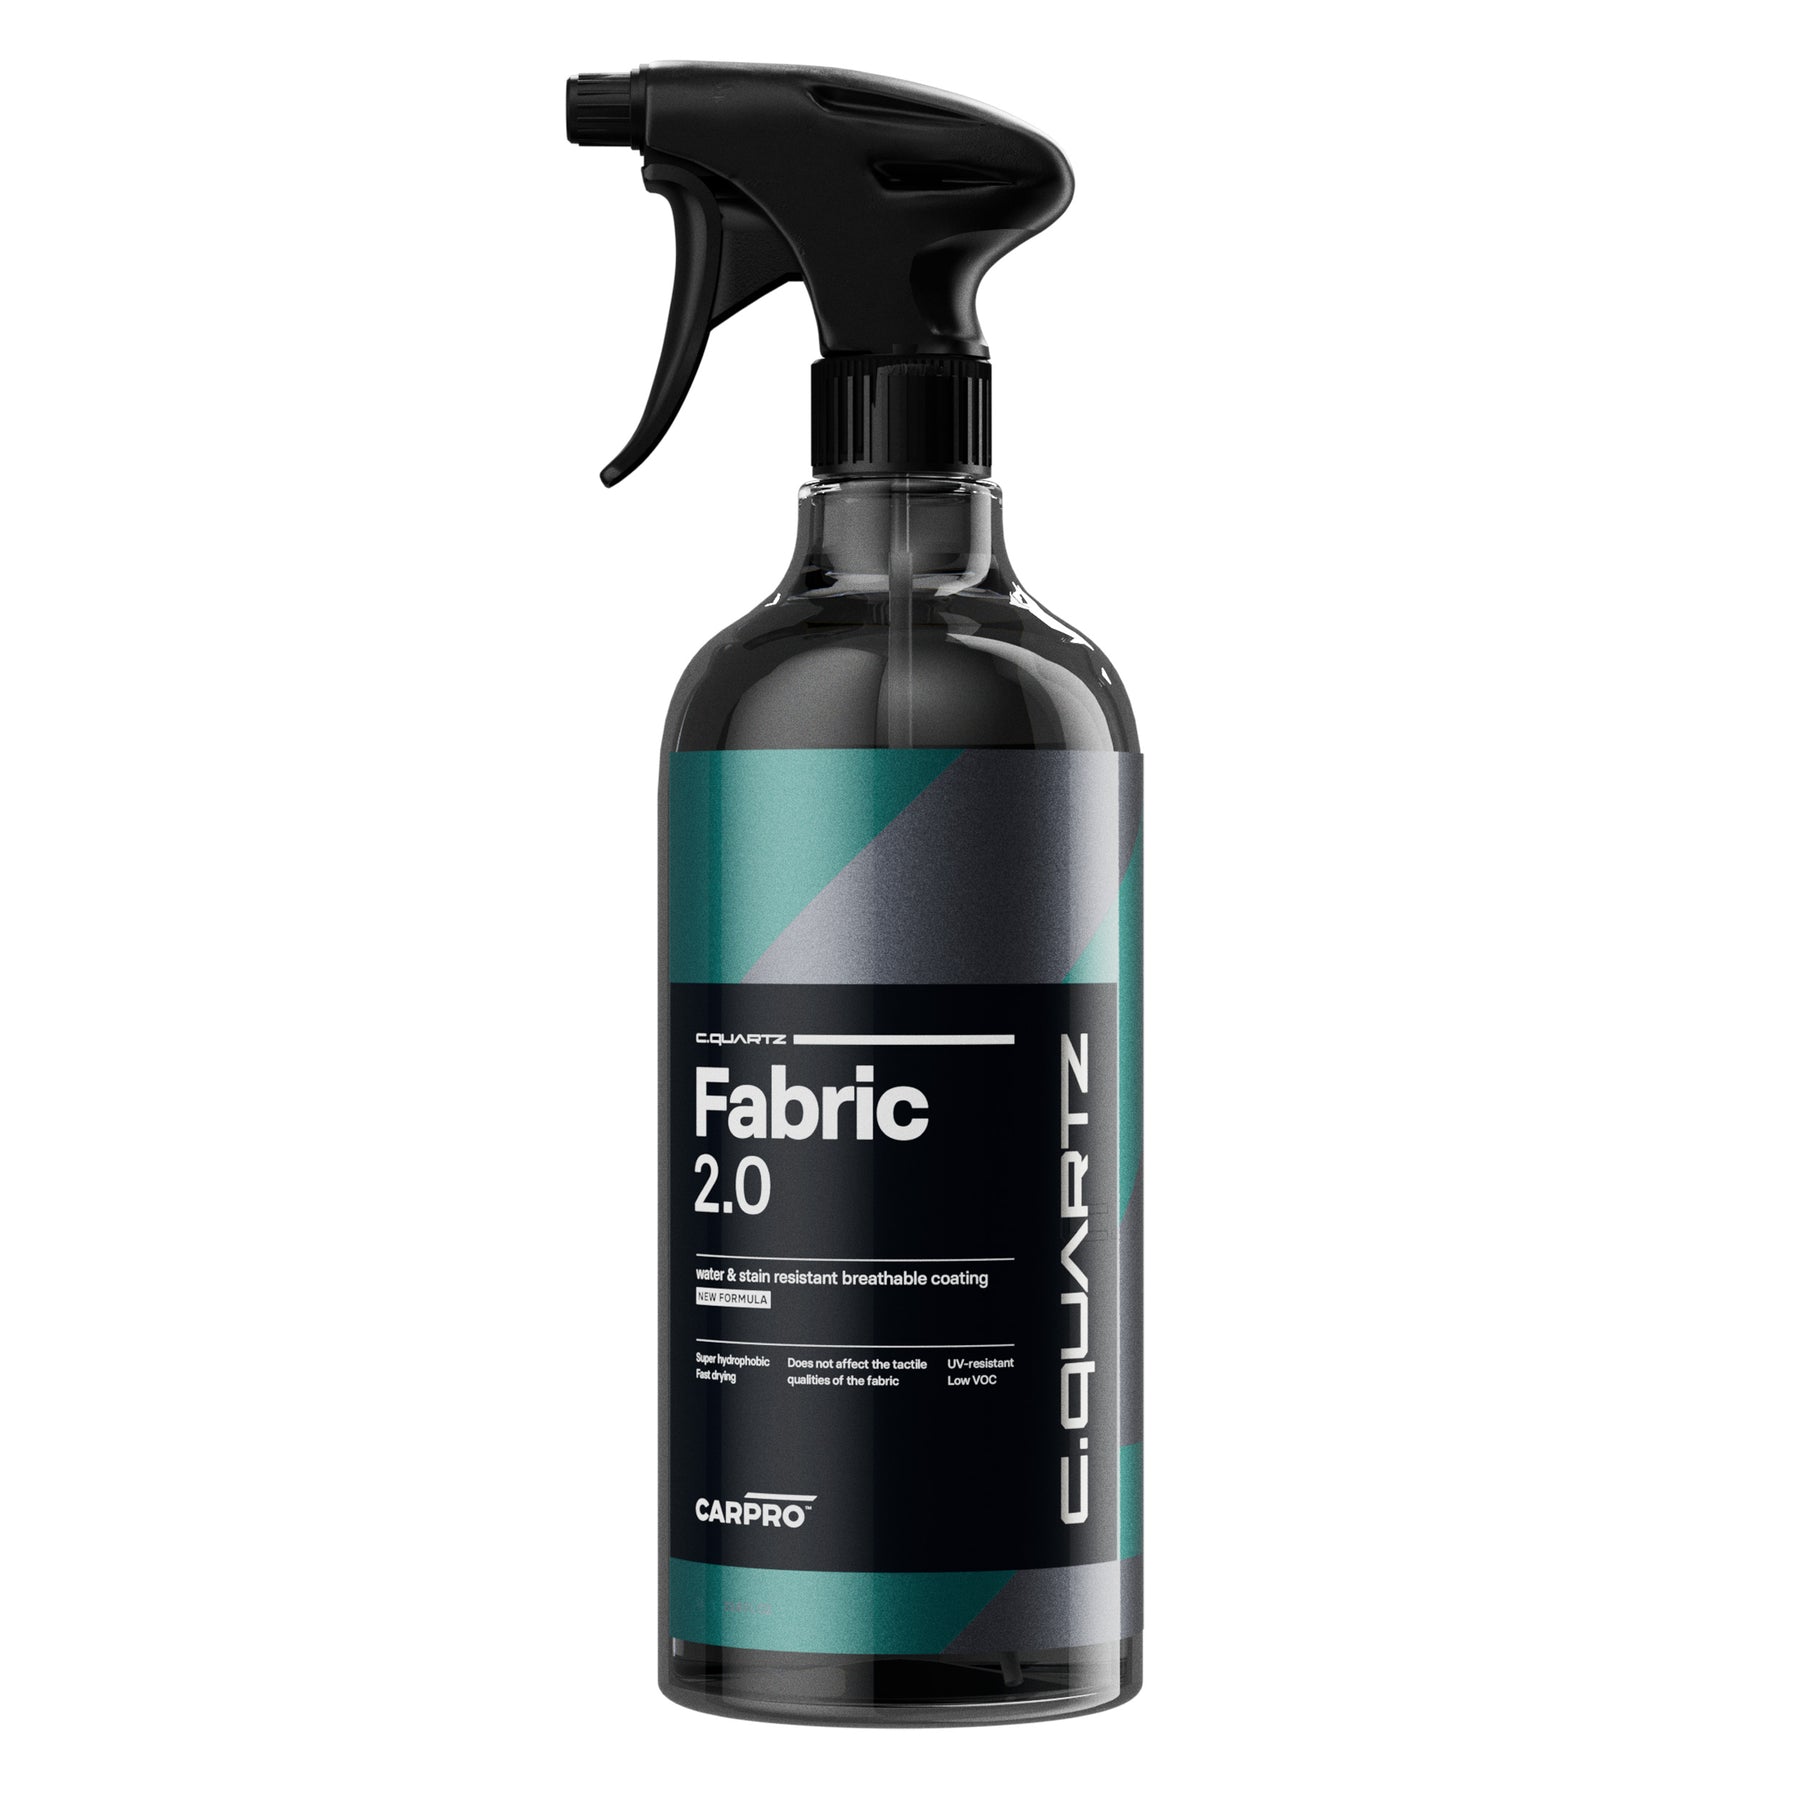 Flacone spray di CARPRO C.QUARTZ Fabric 2.0, un rivestimento traspirante e resistente alle macchie per la protezione dei tessuti.